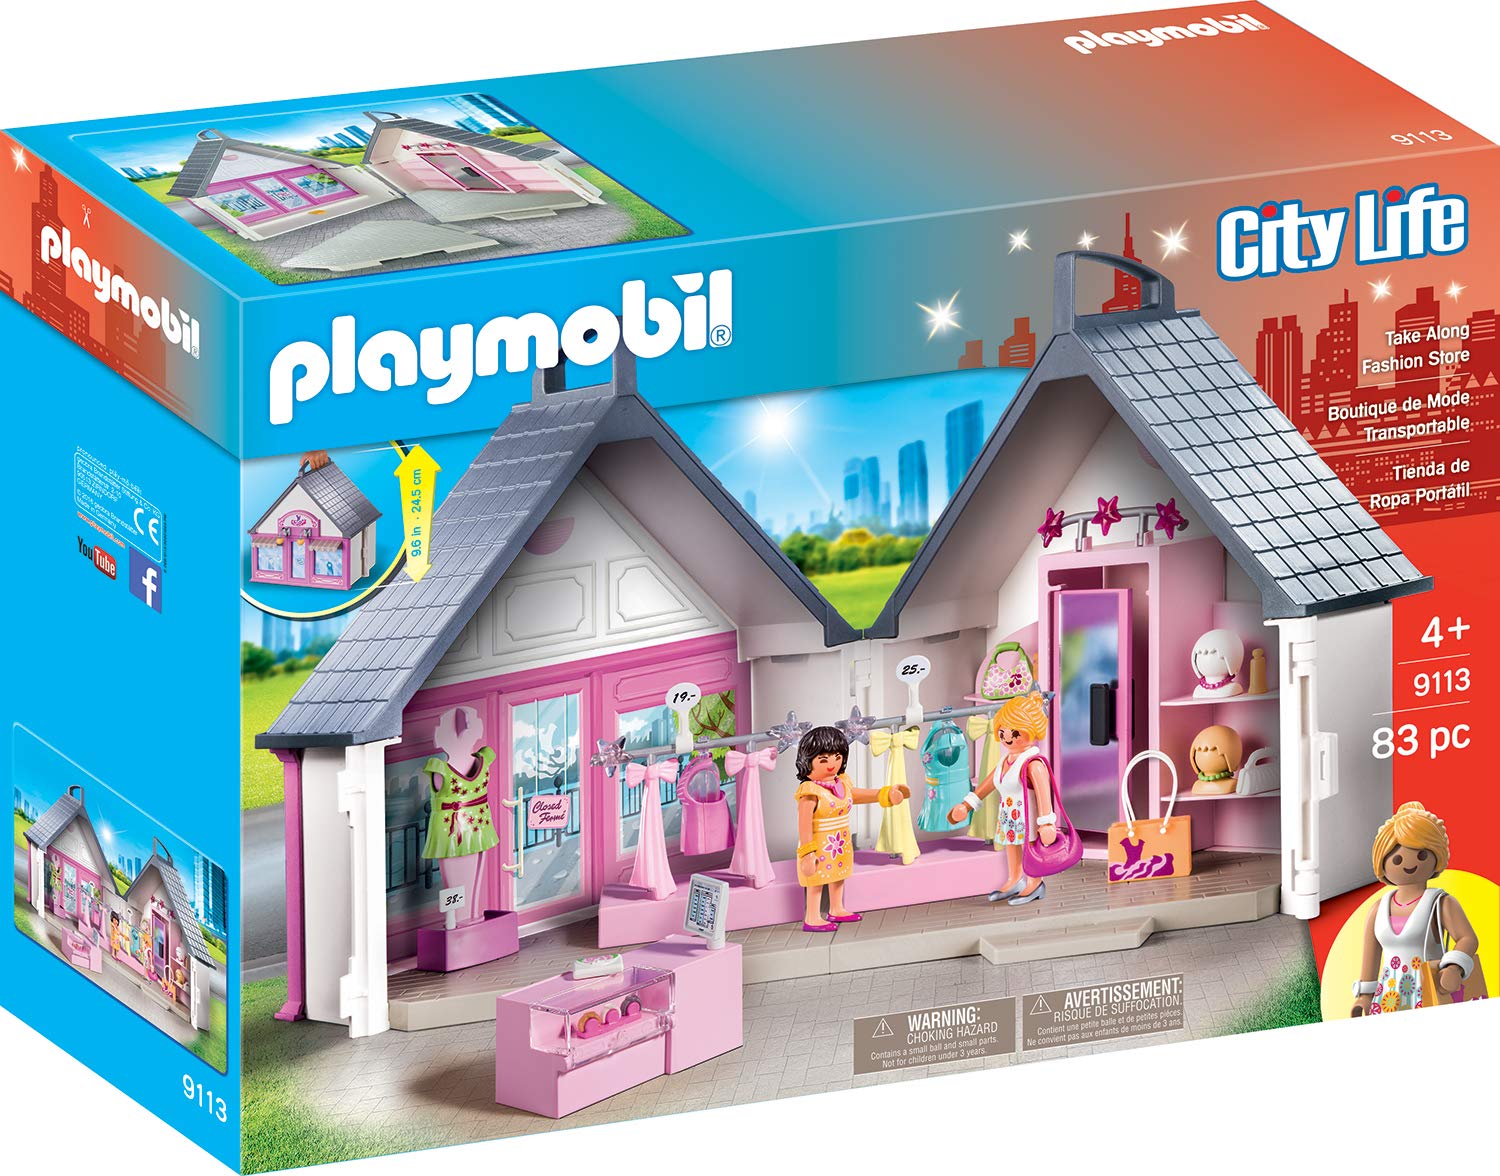 Playmobil Take Along Folding Fashion Shop Game Box